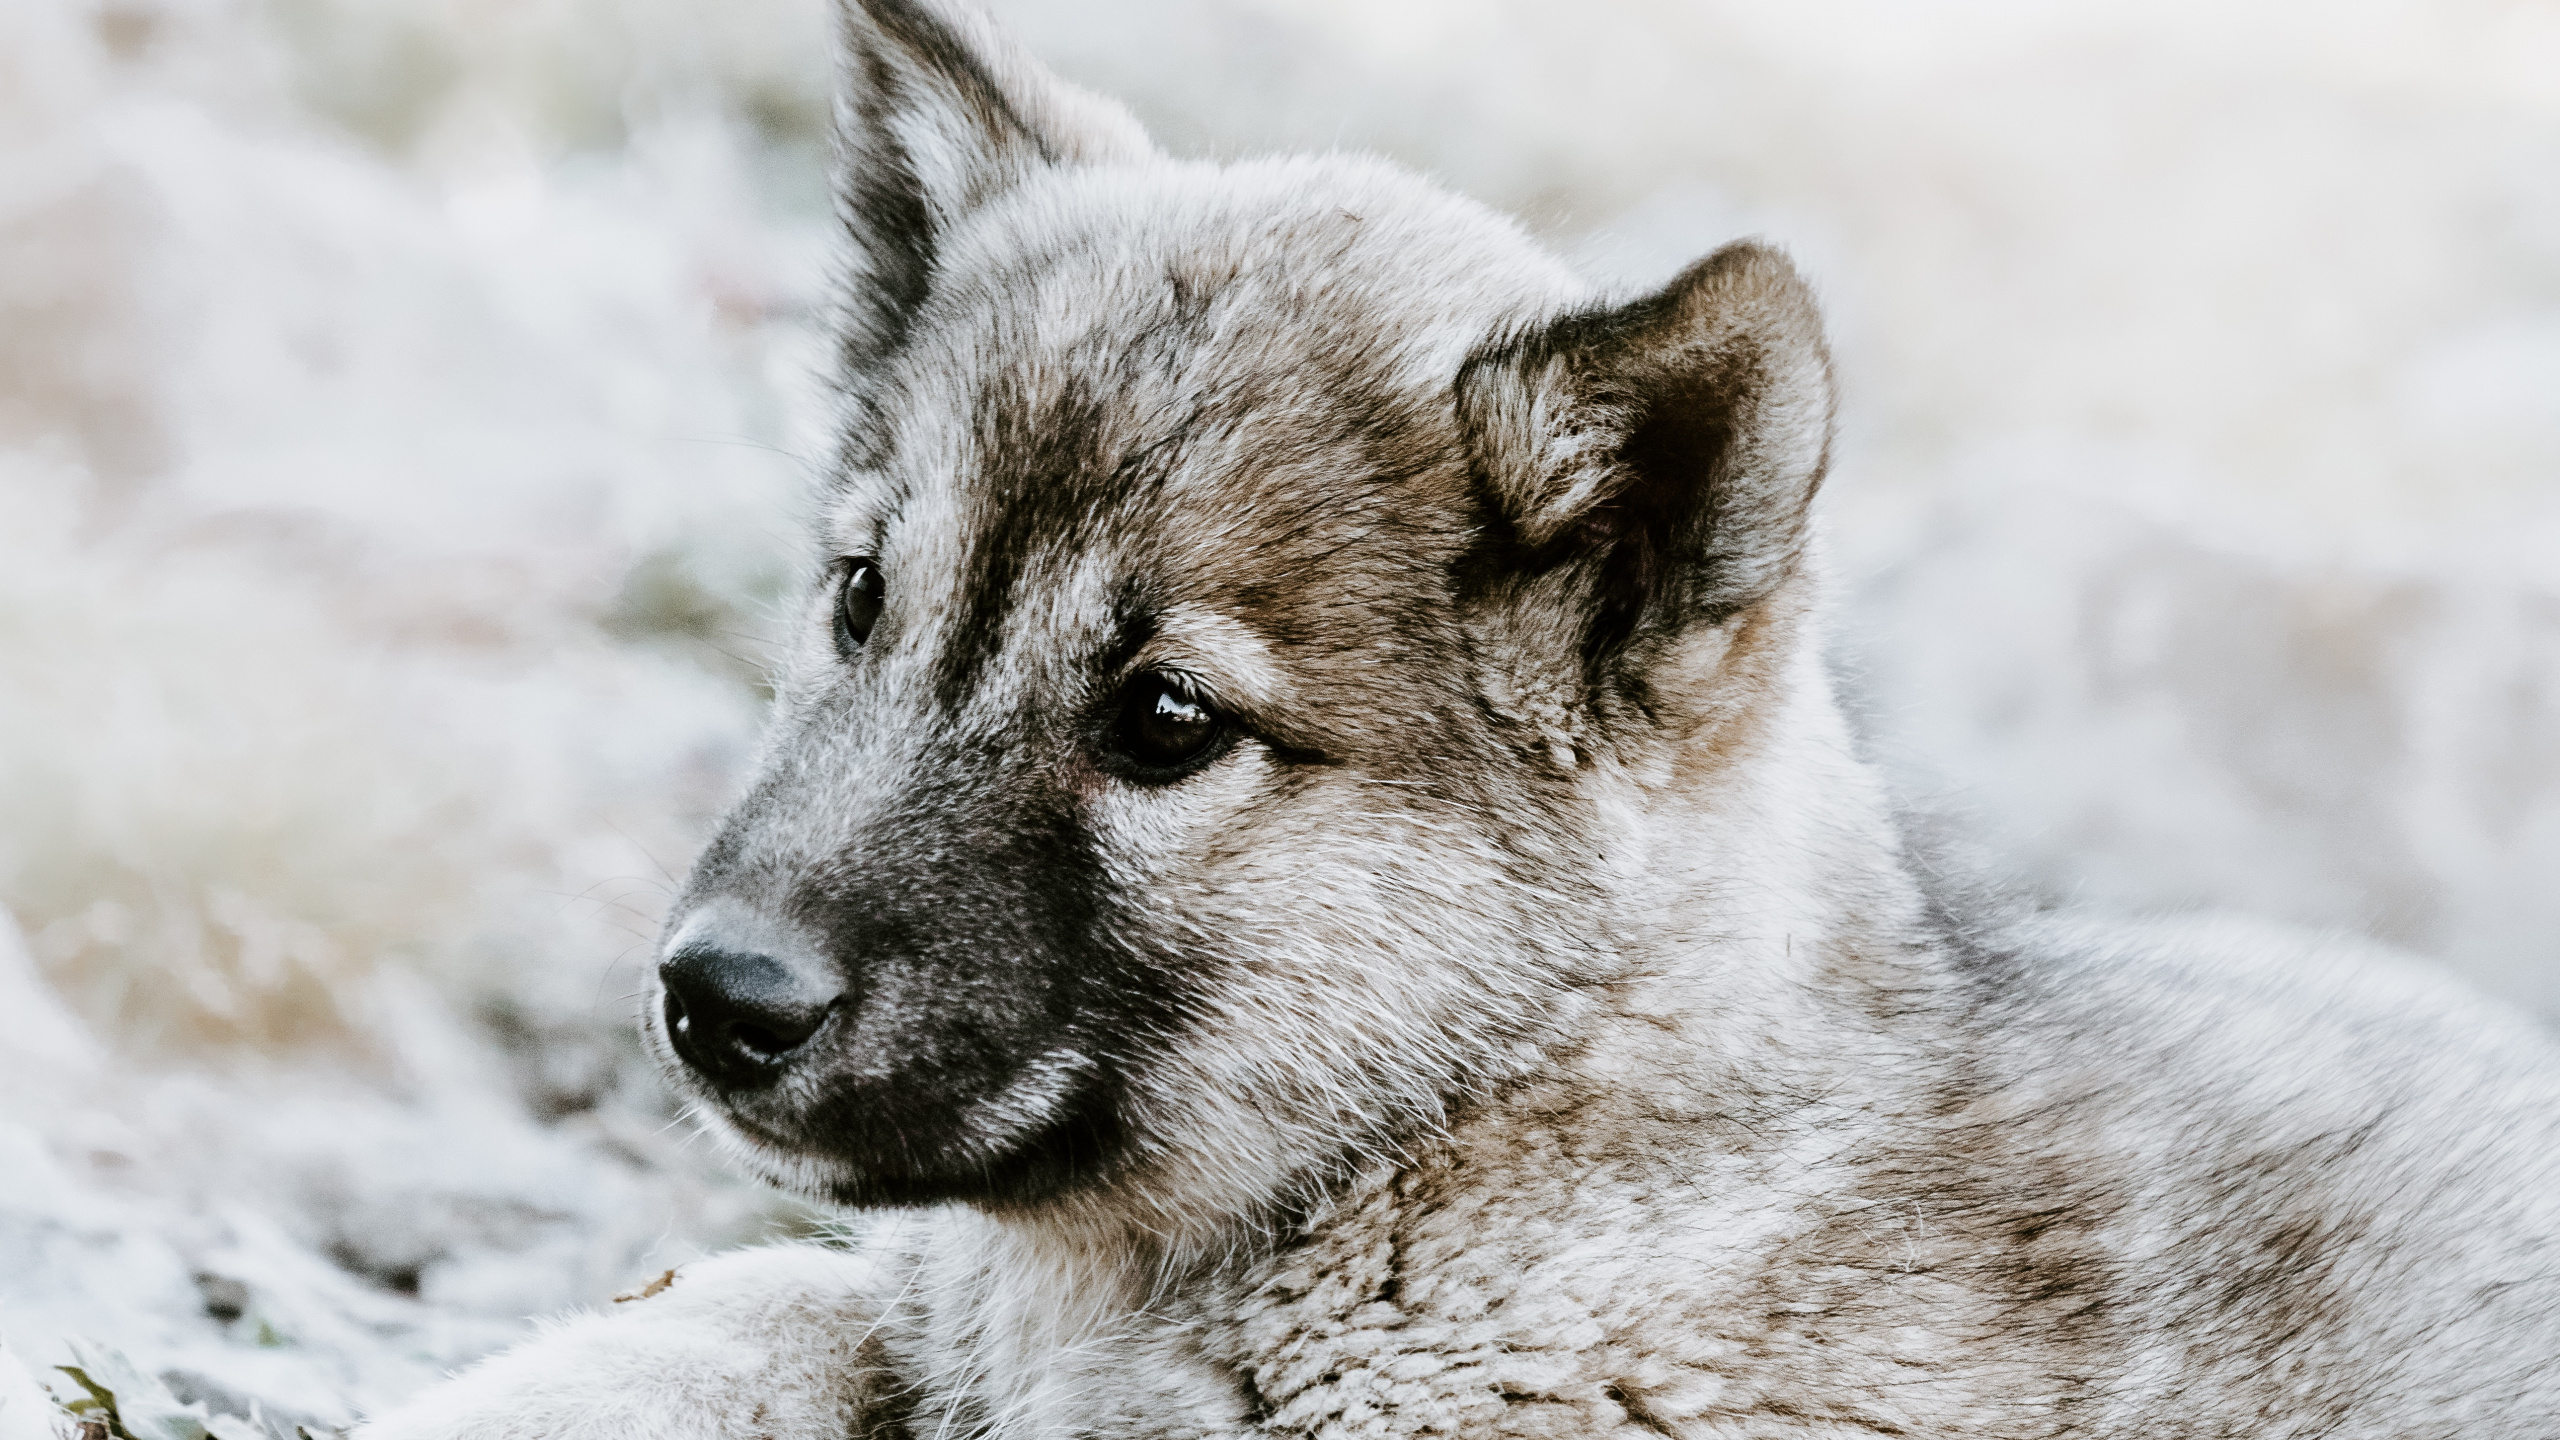 捷克斯洛伐克那只狼狗, 小狗, 挪威elkhound, 那只狼狗, 野生动物 壁纸 2560x1440 允许